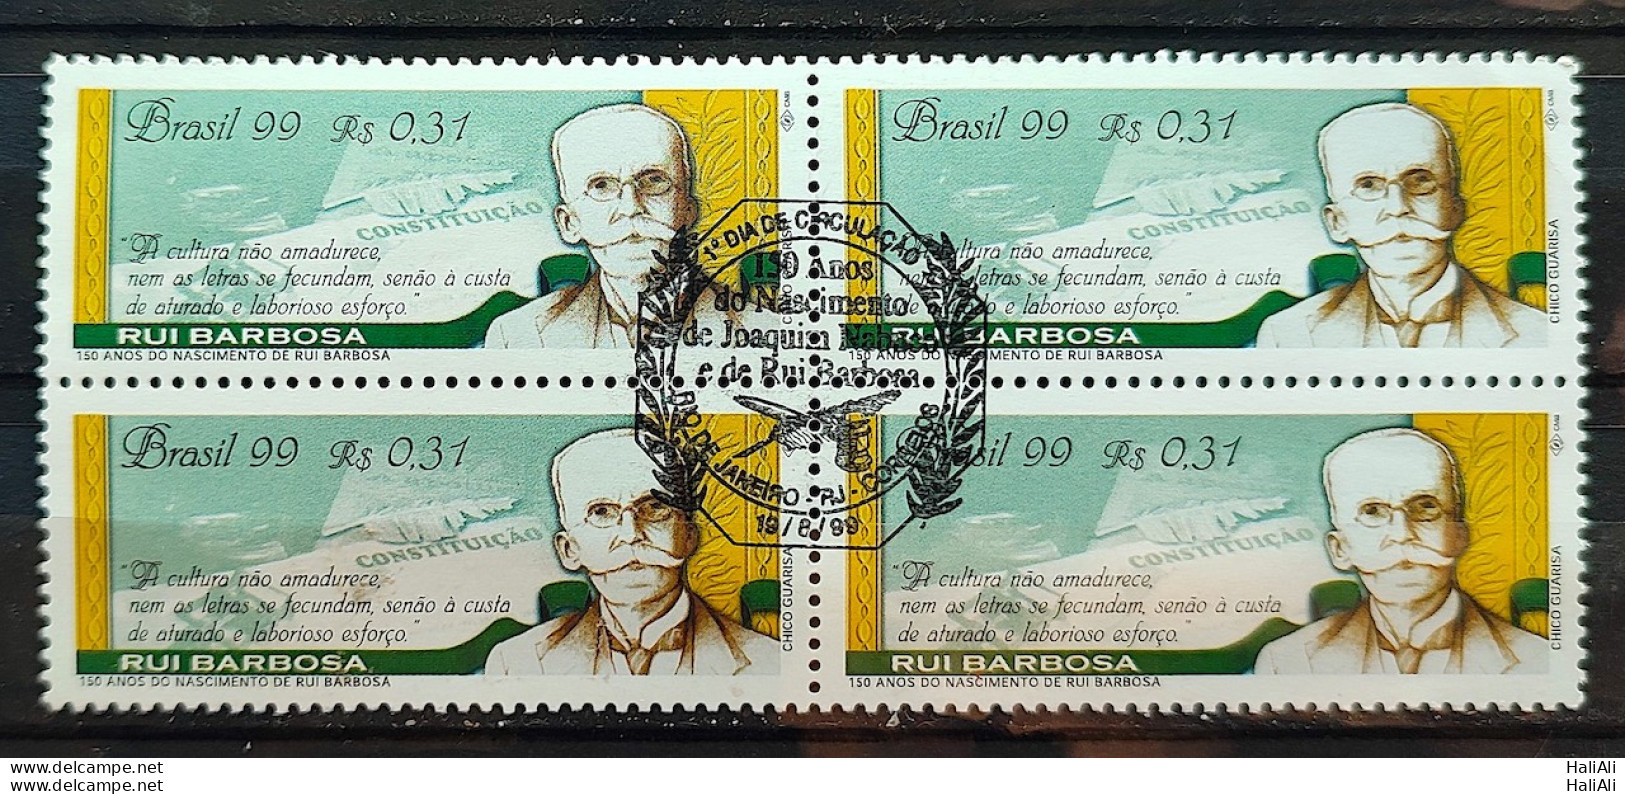 C 2211 Brazil Stamp Rui Barbosa Literature Right Constitution 1999 Block Of 4 CBC RJ - Unused Stamps